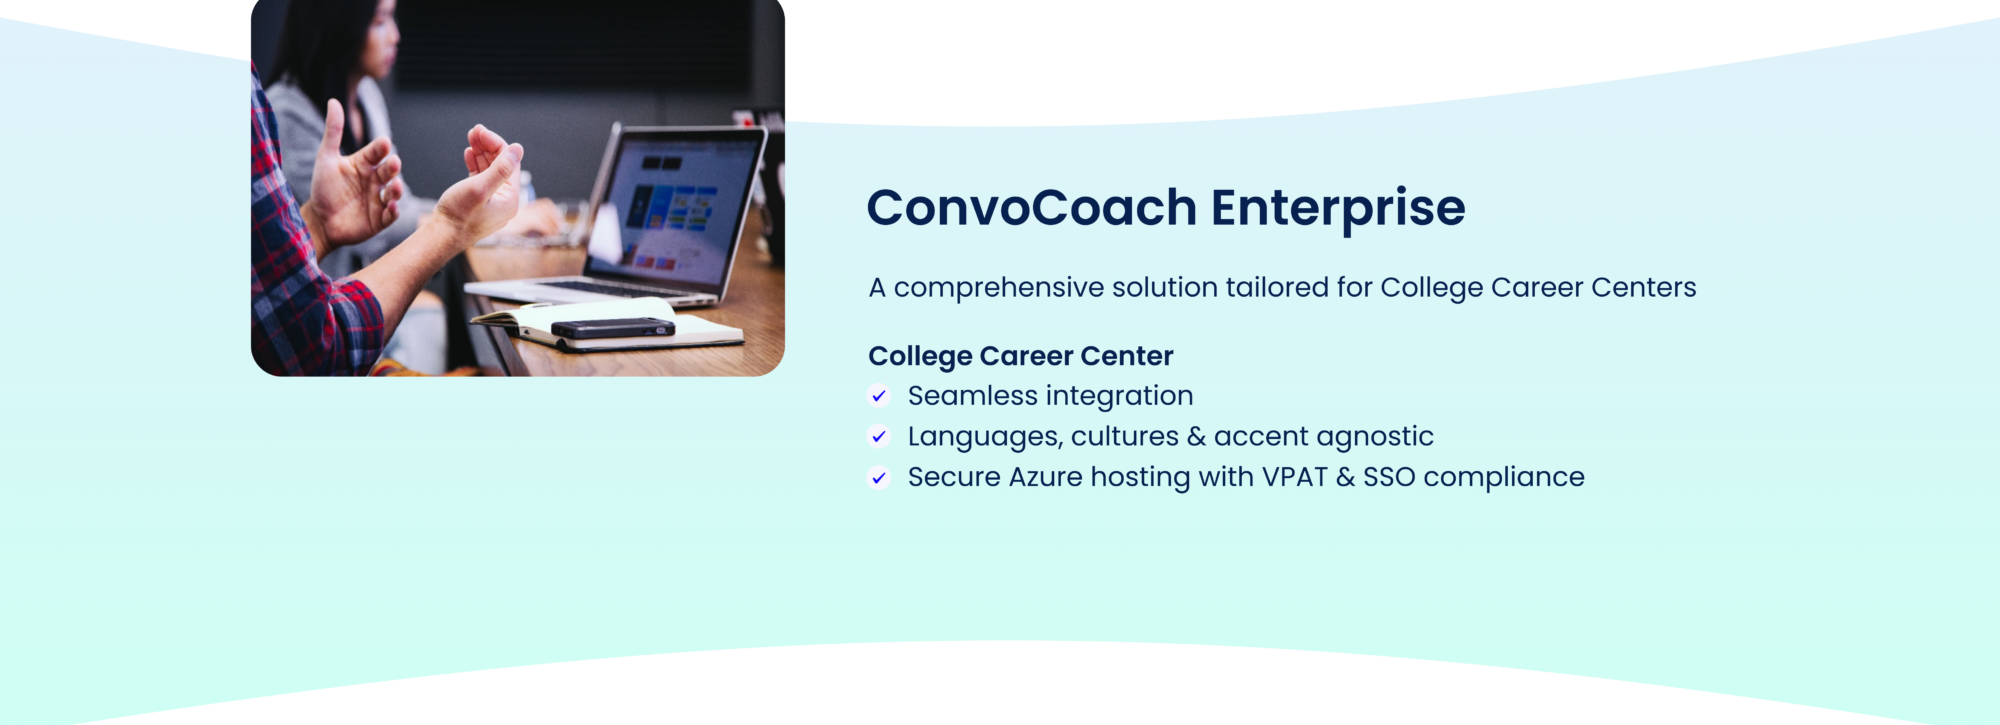 mirro.ai-ConvoCoach-Enterprise-College-Career-Center